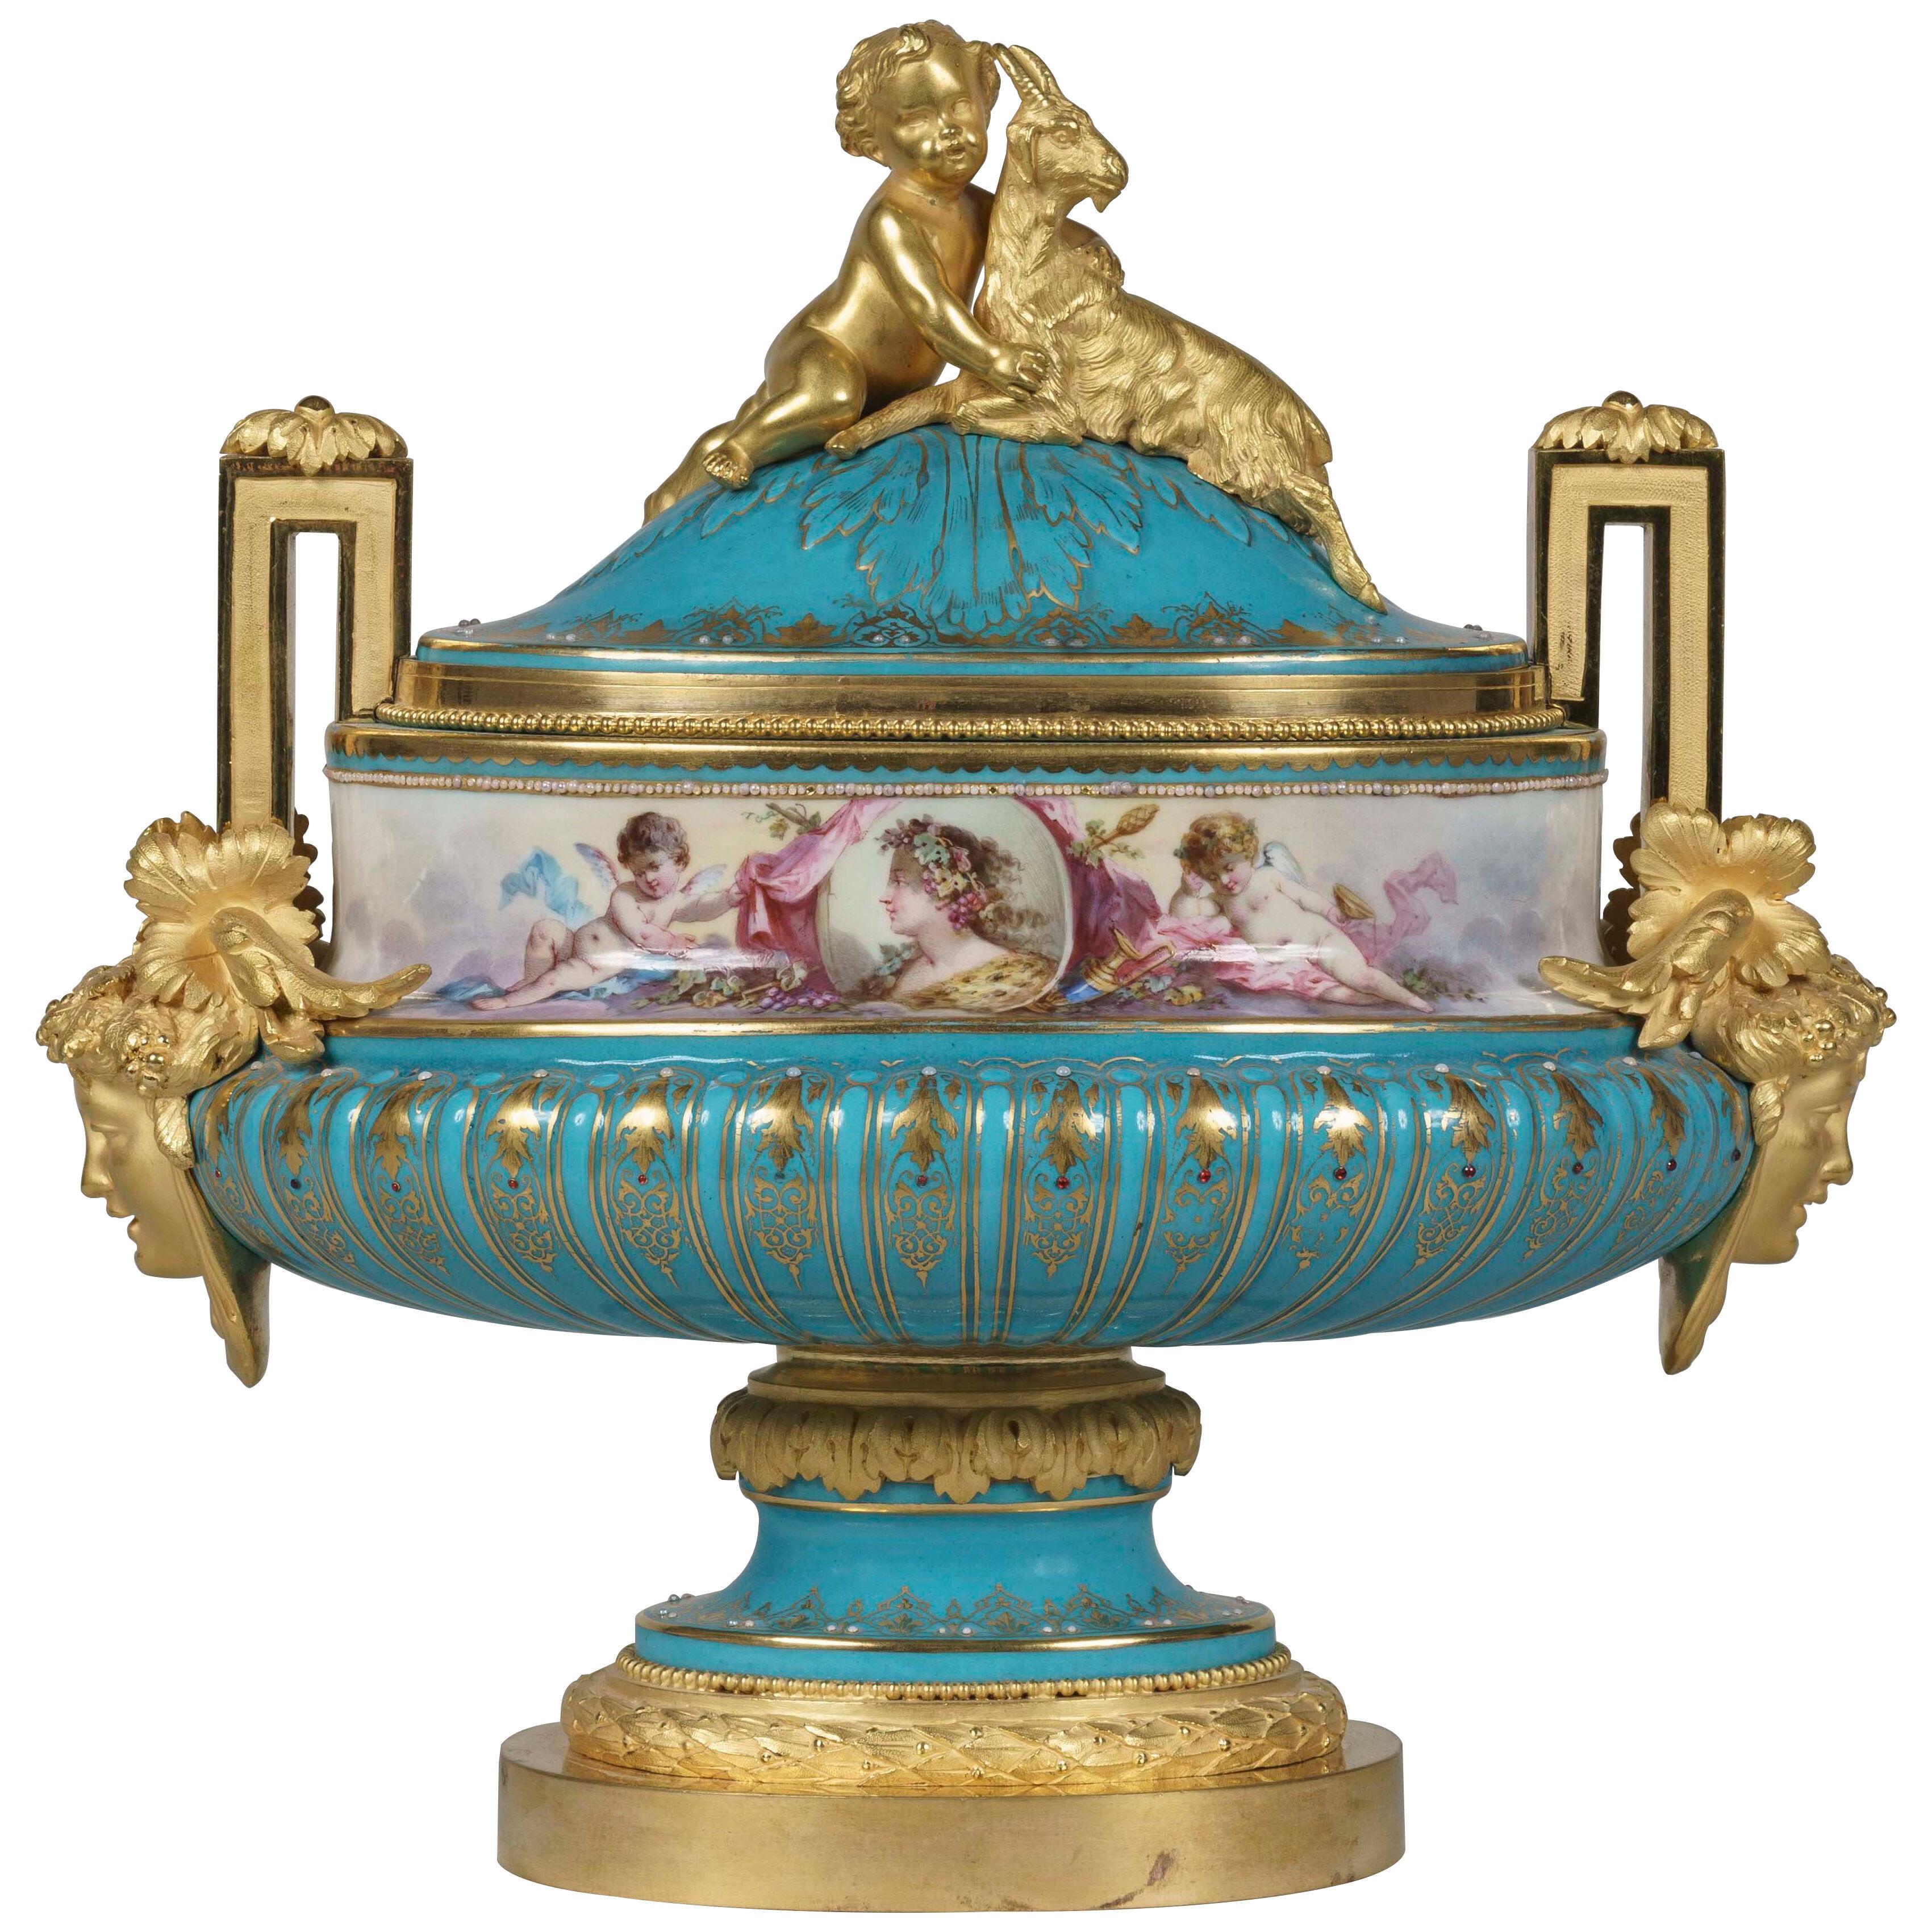 Blue Porcelain 'Sèvres' Centerpiece in the Louis XVI Style